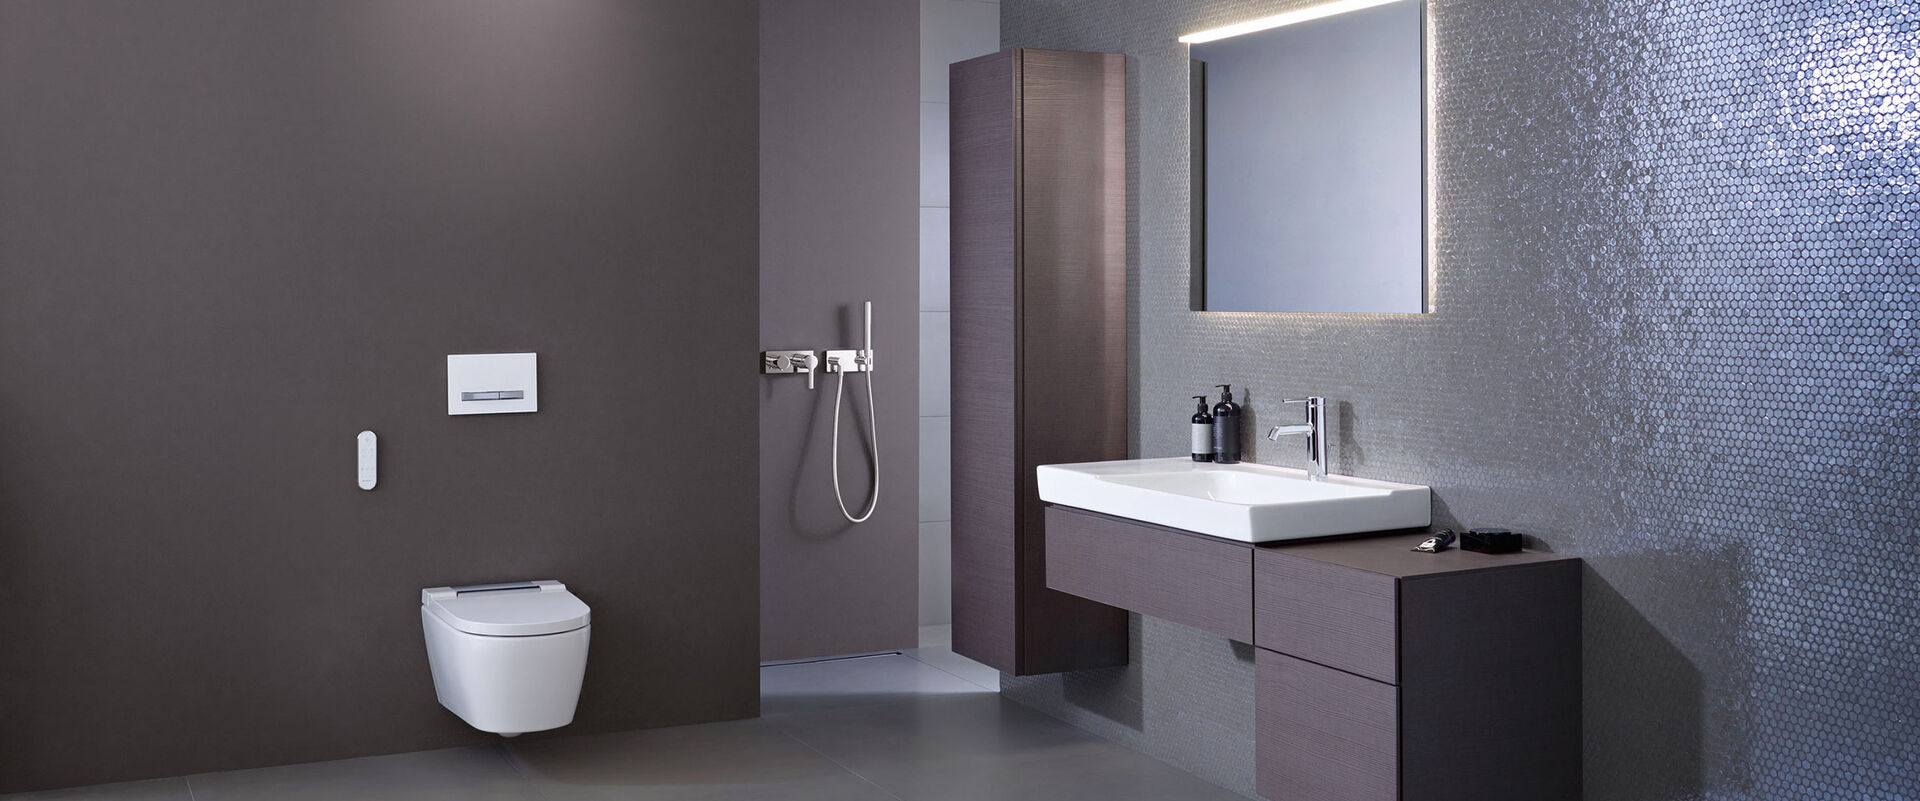 Traumbad mit modernem Dusch-WC von Geberit: Das AquaClean Sela bietet zahlreiche Komfortfunktionen, die sich bequem per Fernbedienung steuern lassen.